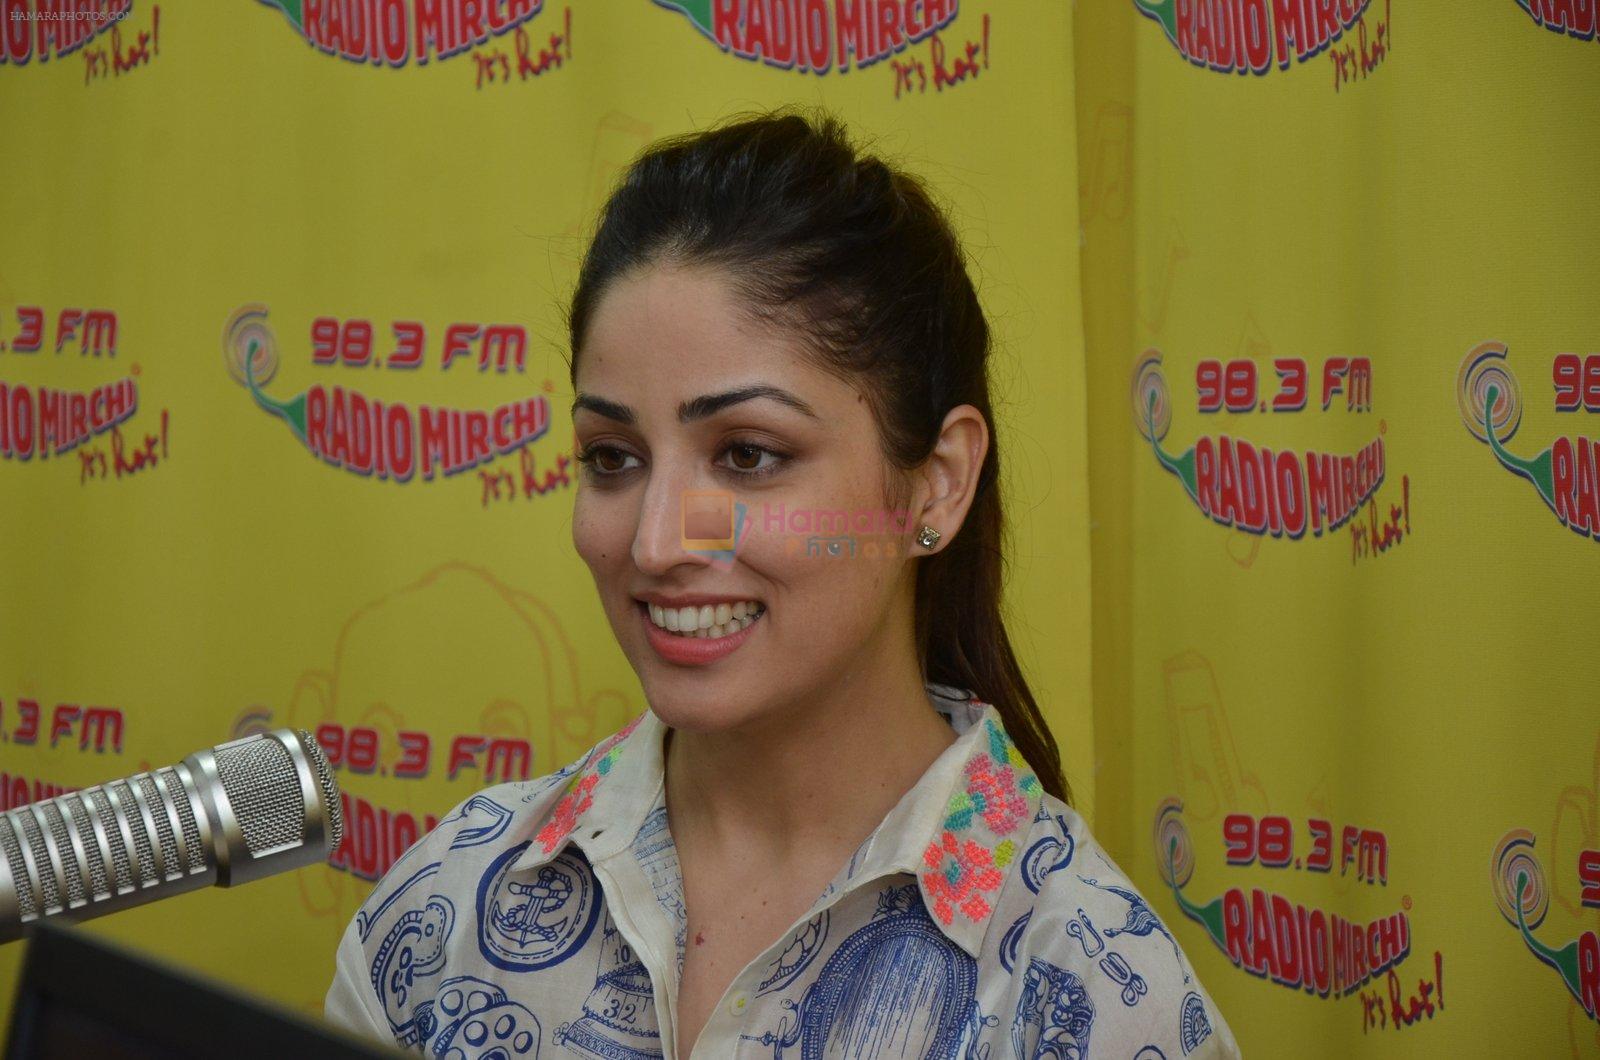 Yami Gautam at radio mirchi on 31st May 2016